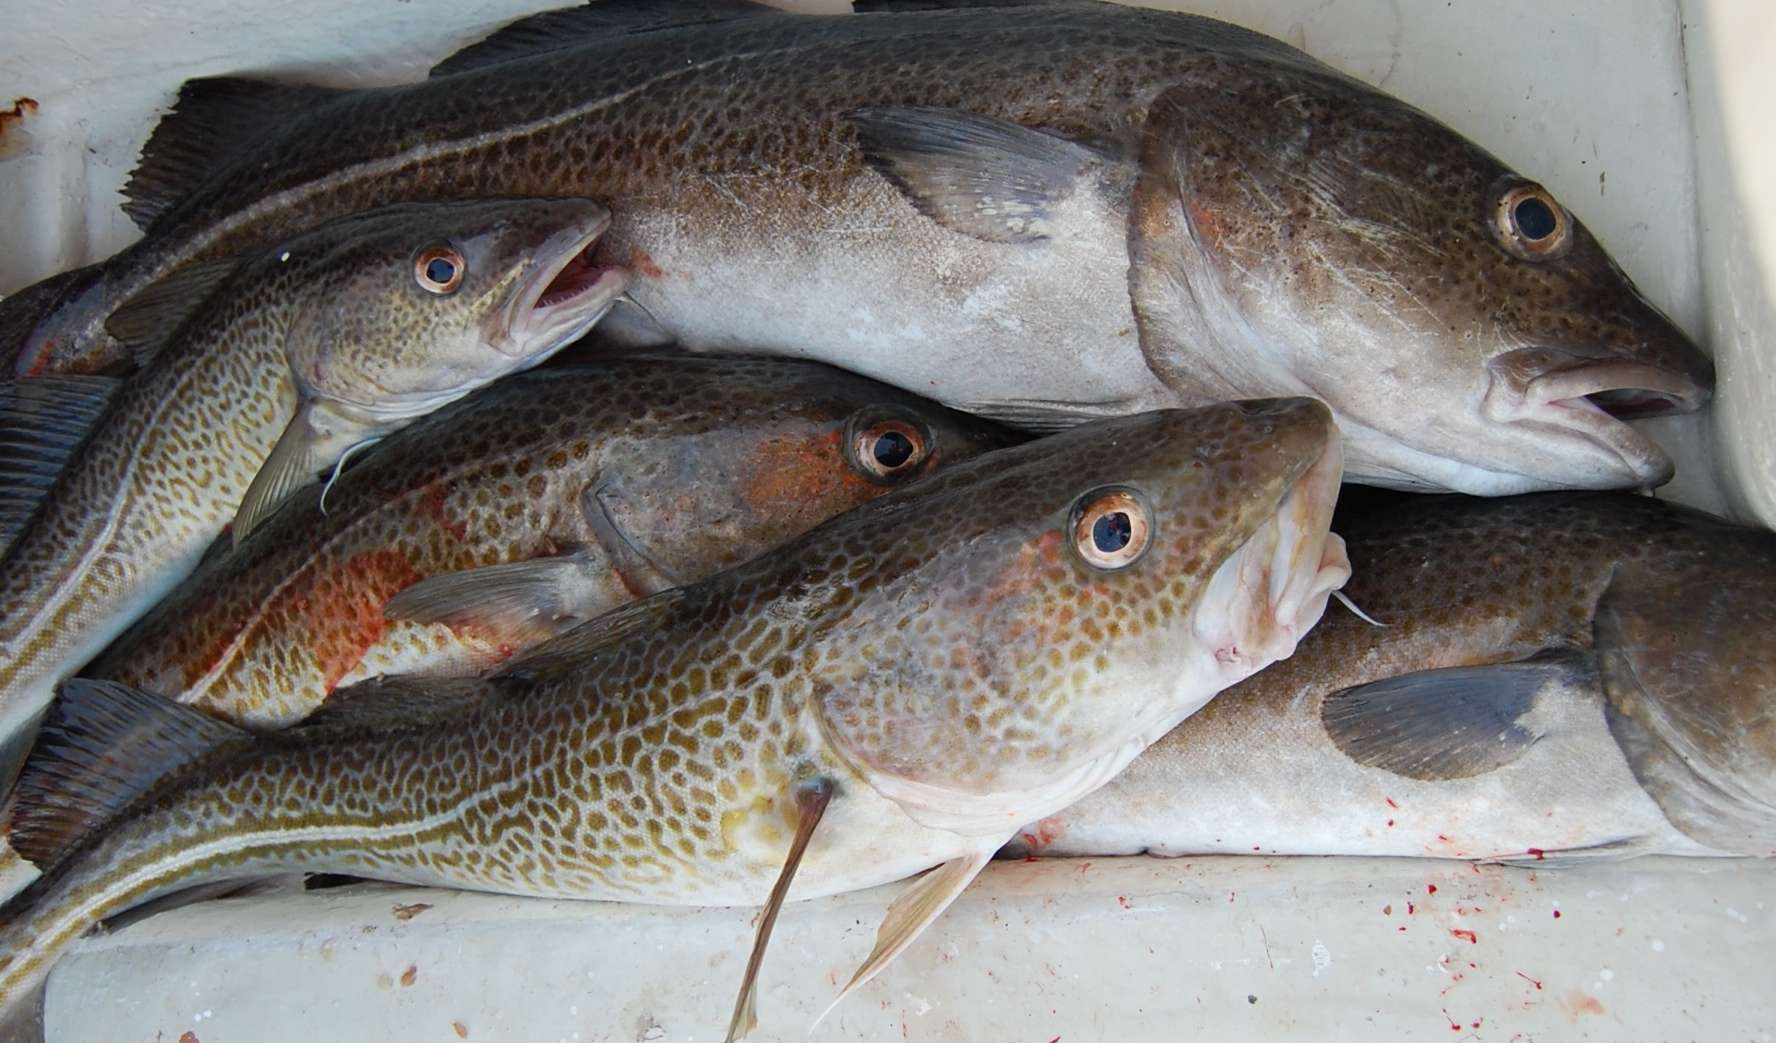 Рыба семейства тресковых - список представителей и видов, названия и фото